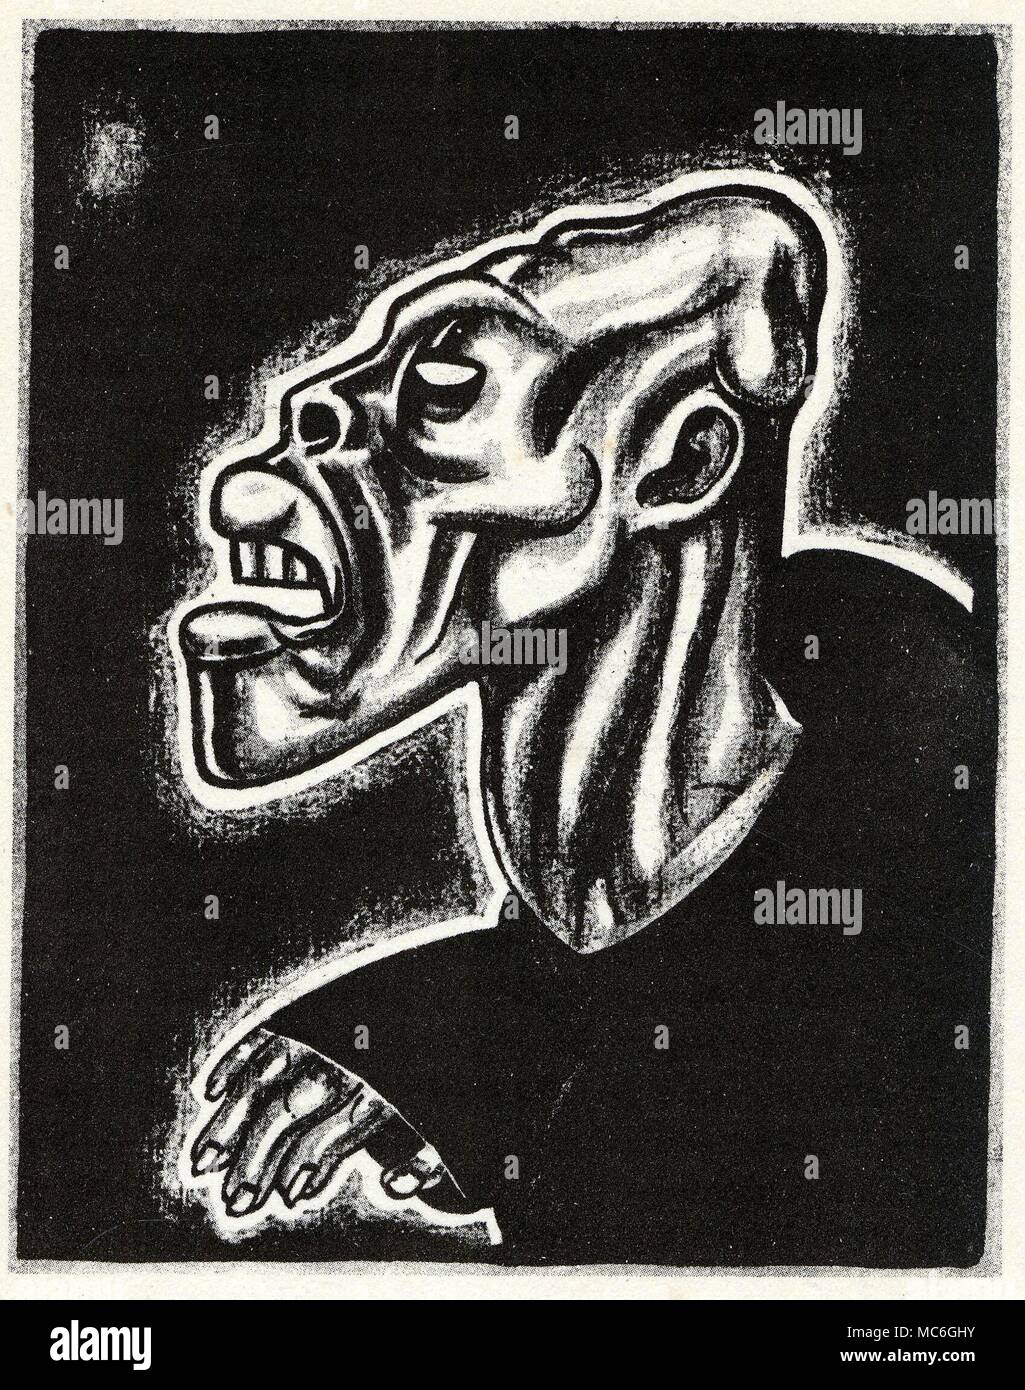 VOODOO - OUANGA un uomo segnato per la morte con la morte Voodoo-maledizione ouanga o incantesimo. Illustrazione di A. re, per W.B. Seabrook, la magica Isola, 1929. Foto Stock